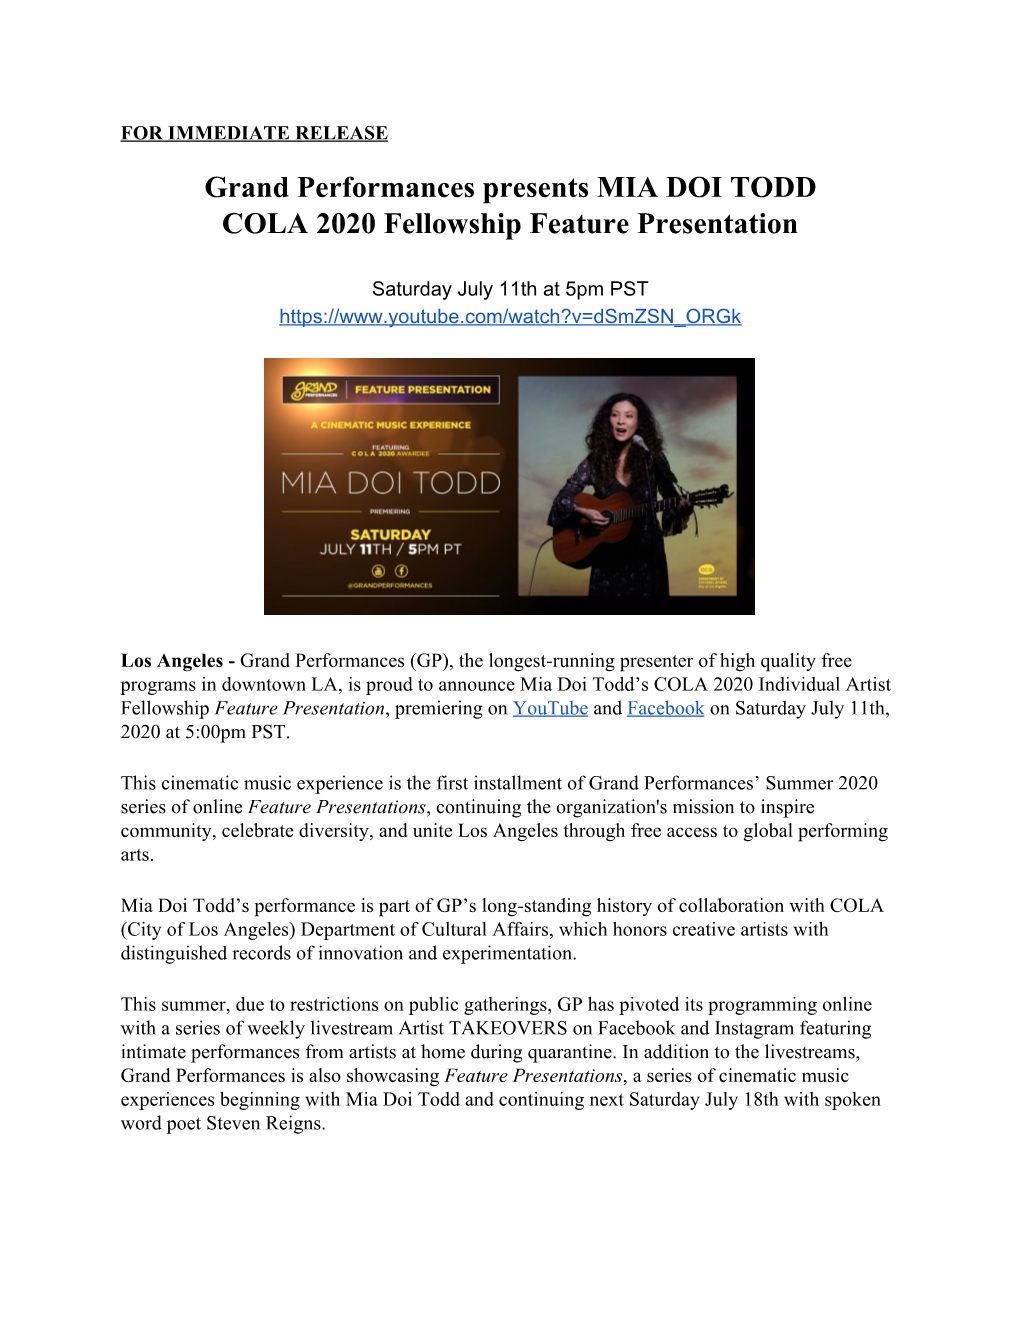 July 11, 2020 Grand Performances Presents Mia Doi Todd Cola 2020